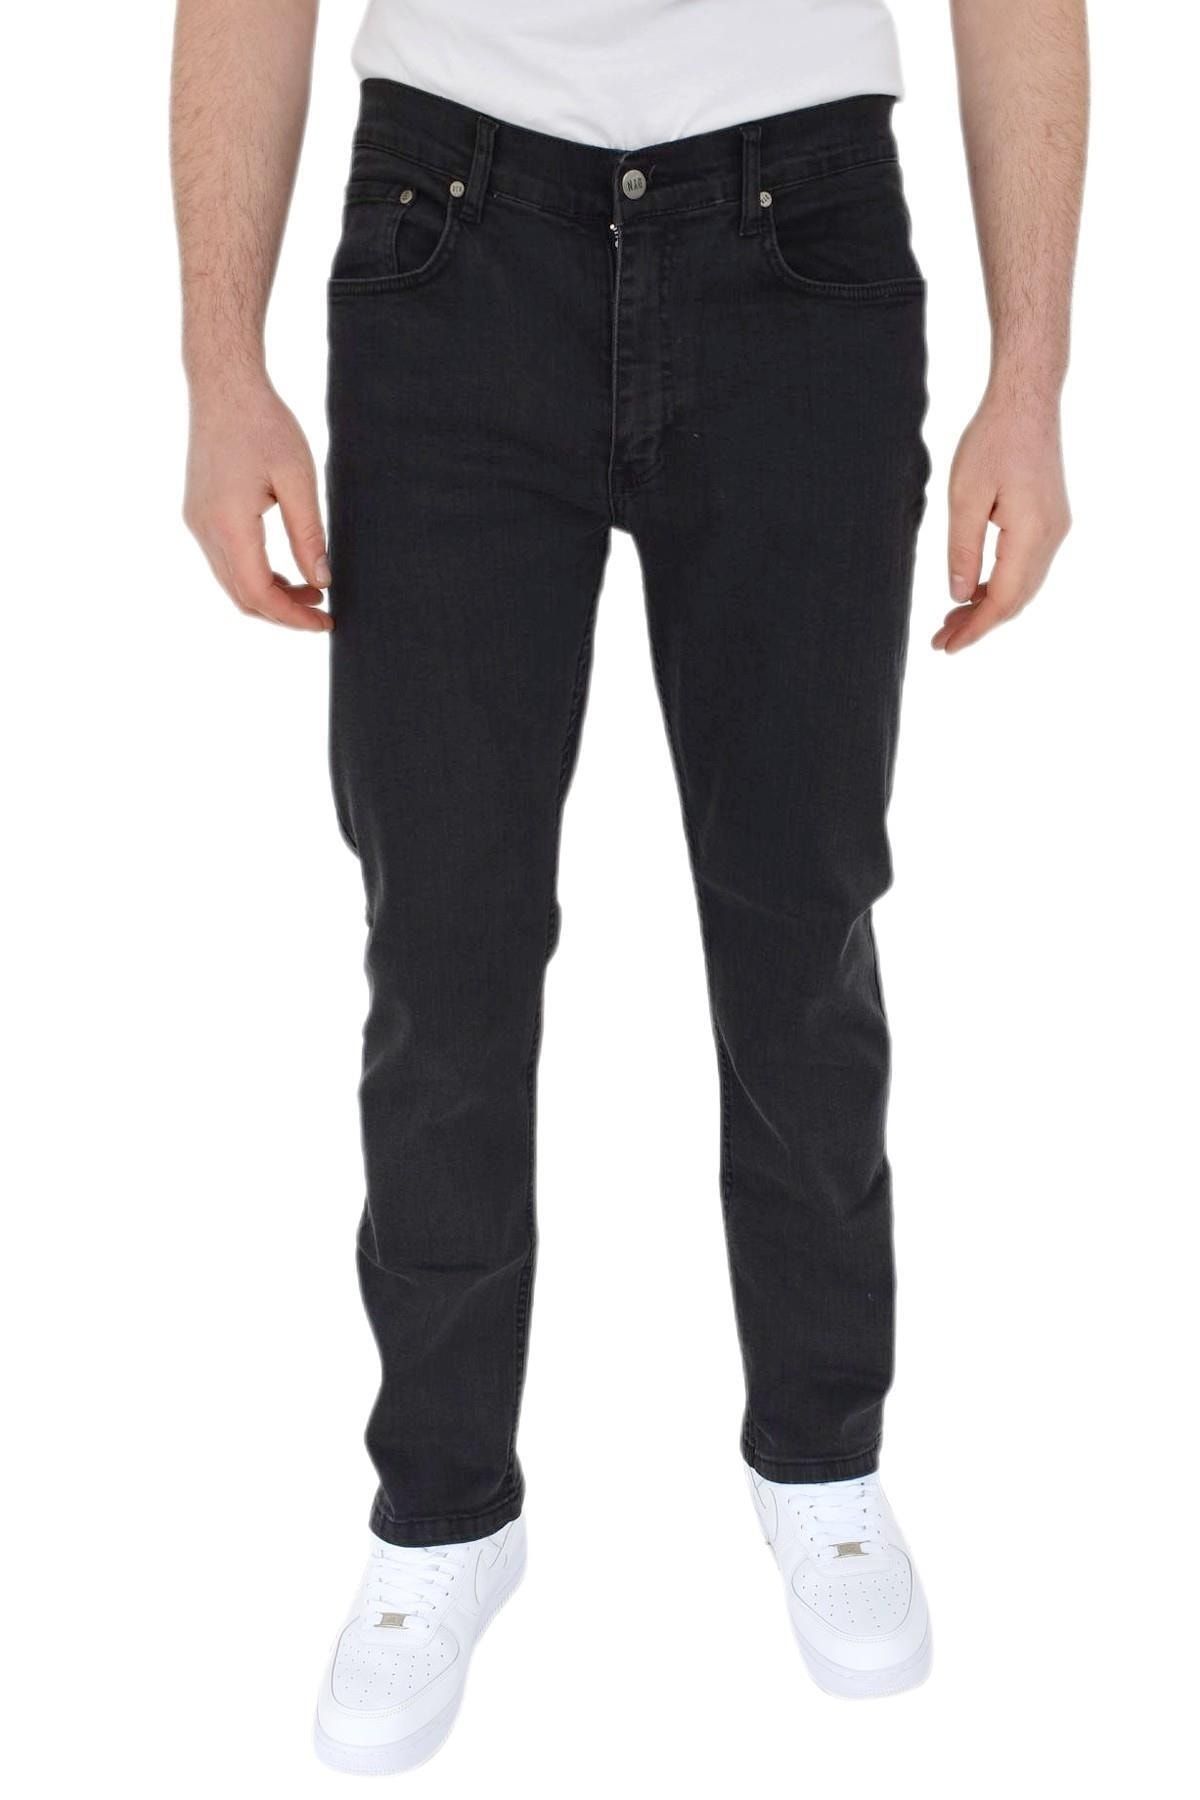 Dynamo Erkek Regular Jeans Pantolon 1701 Bgl-st02749